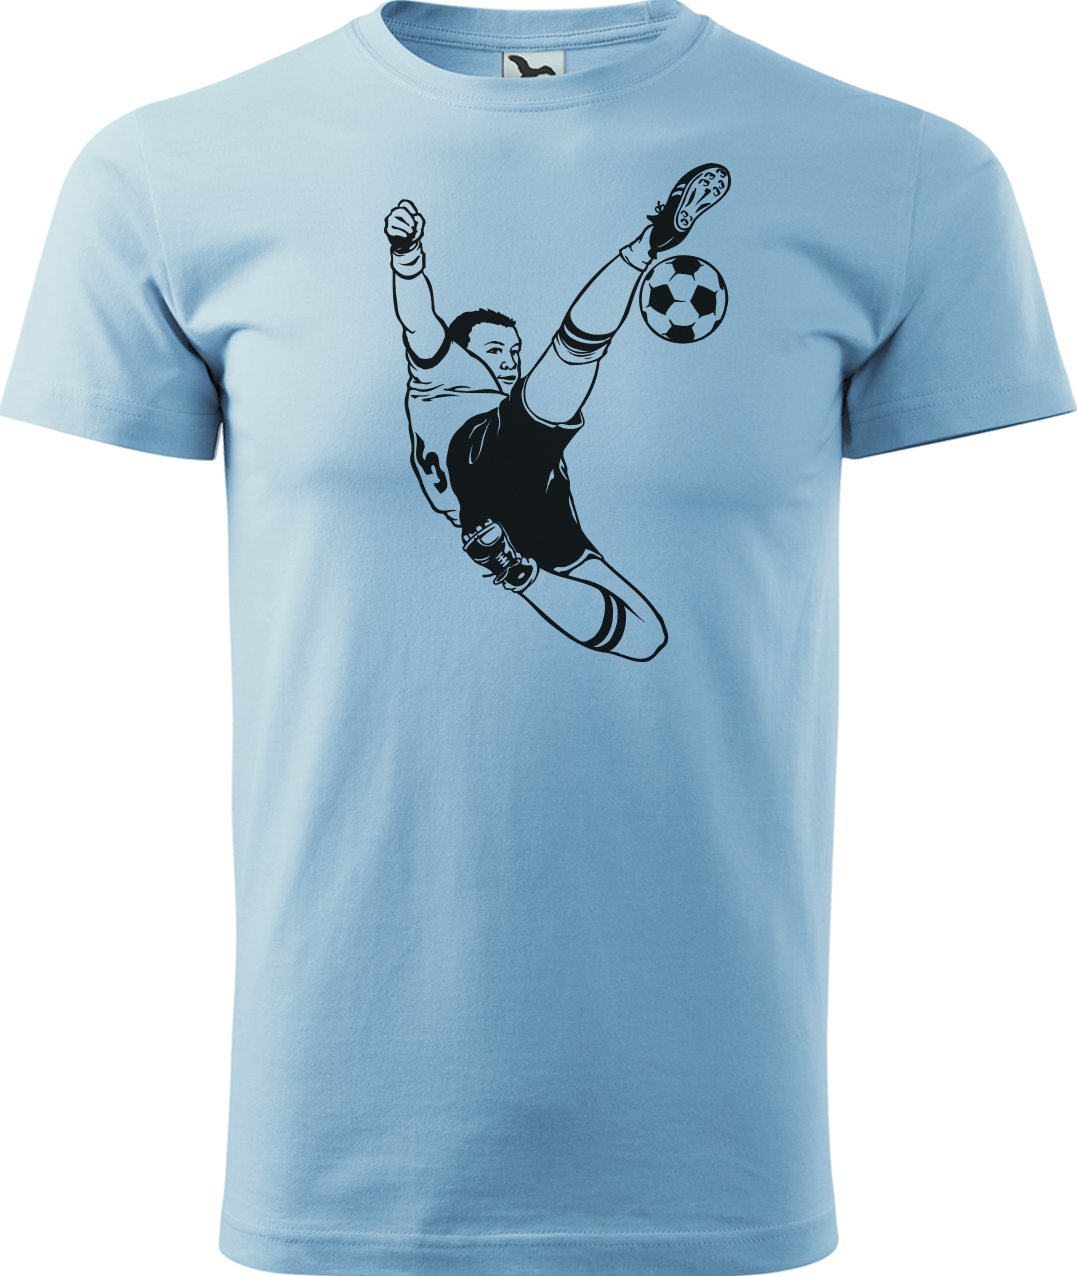 Tričko pro fotbalistu - Fotbalista s míčem Velikost: XL, Barva: Nebesky modrá (15)